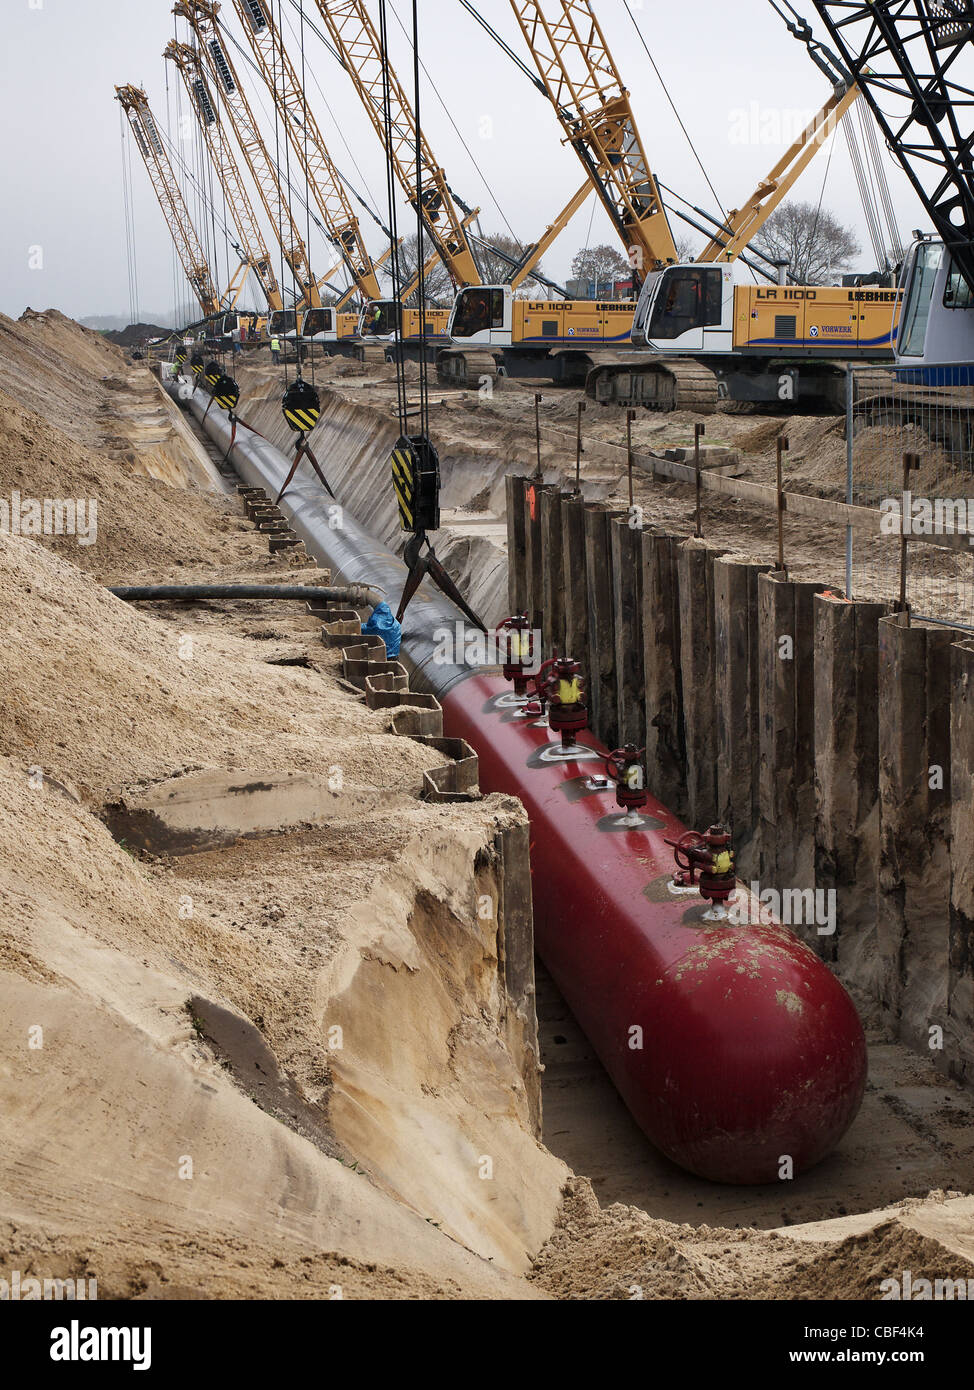 La construction d'un gazoduc reliant avec le gazoduc Nord Stream entre la Russie et l'Europe de l'Ouest. Banque D'Images